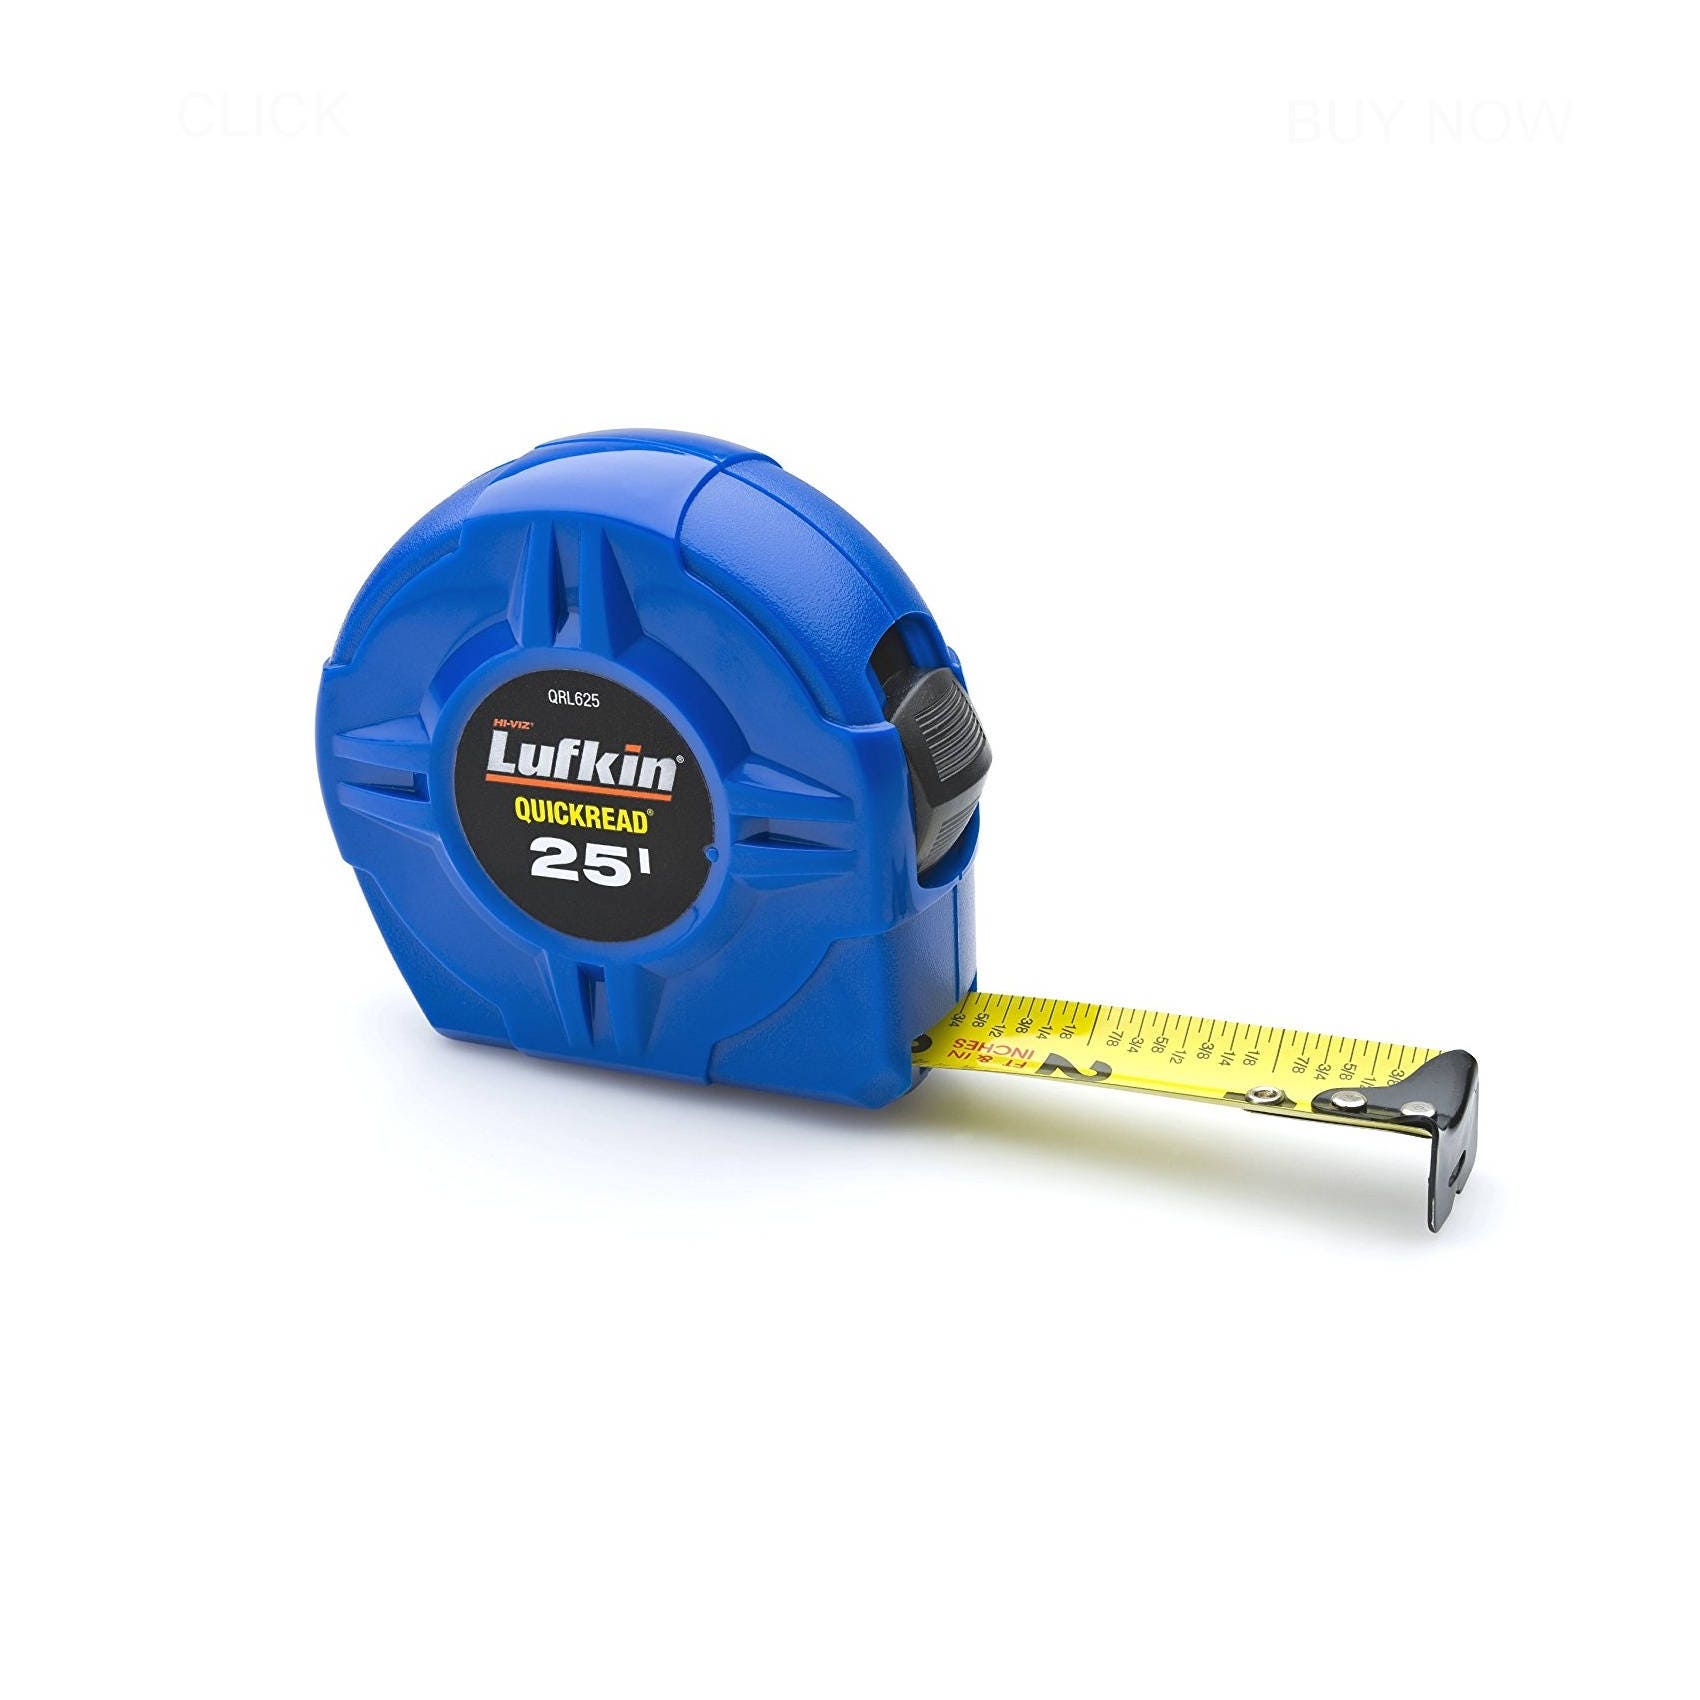 Tailor Plastic Round Shape Retractable Tape Measure Soft Ruler Blue 1.5M  2pcs